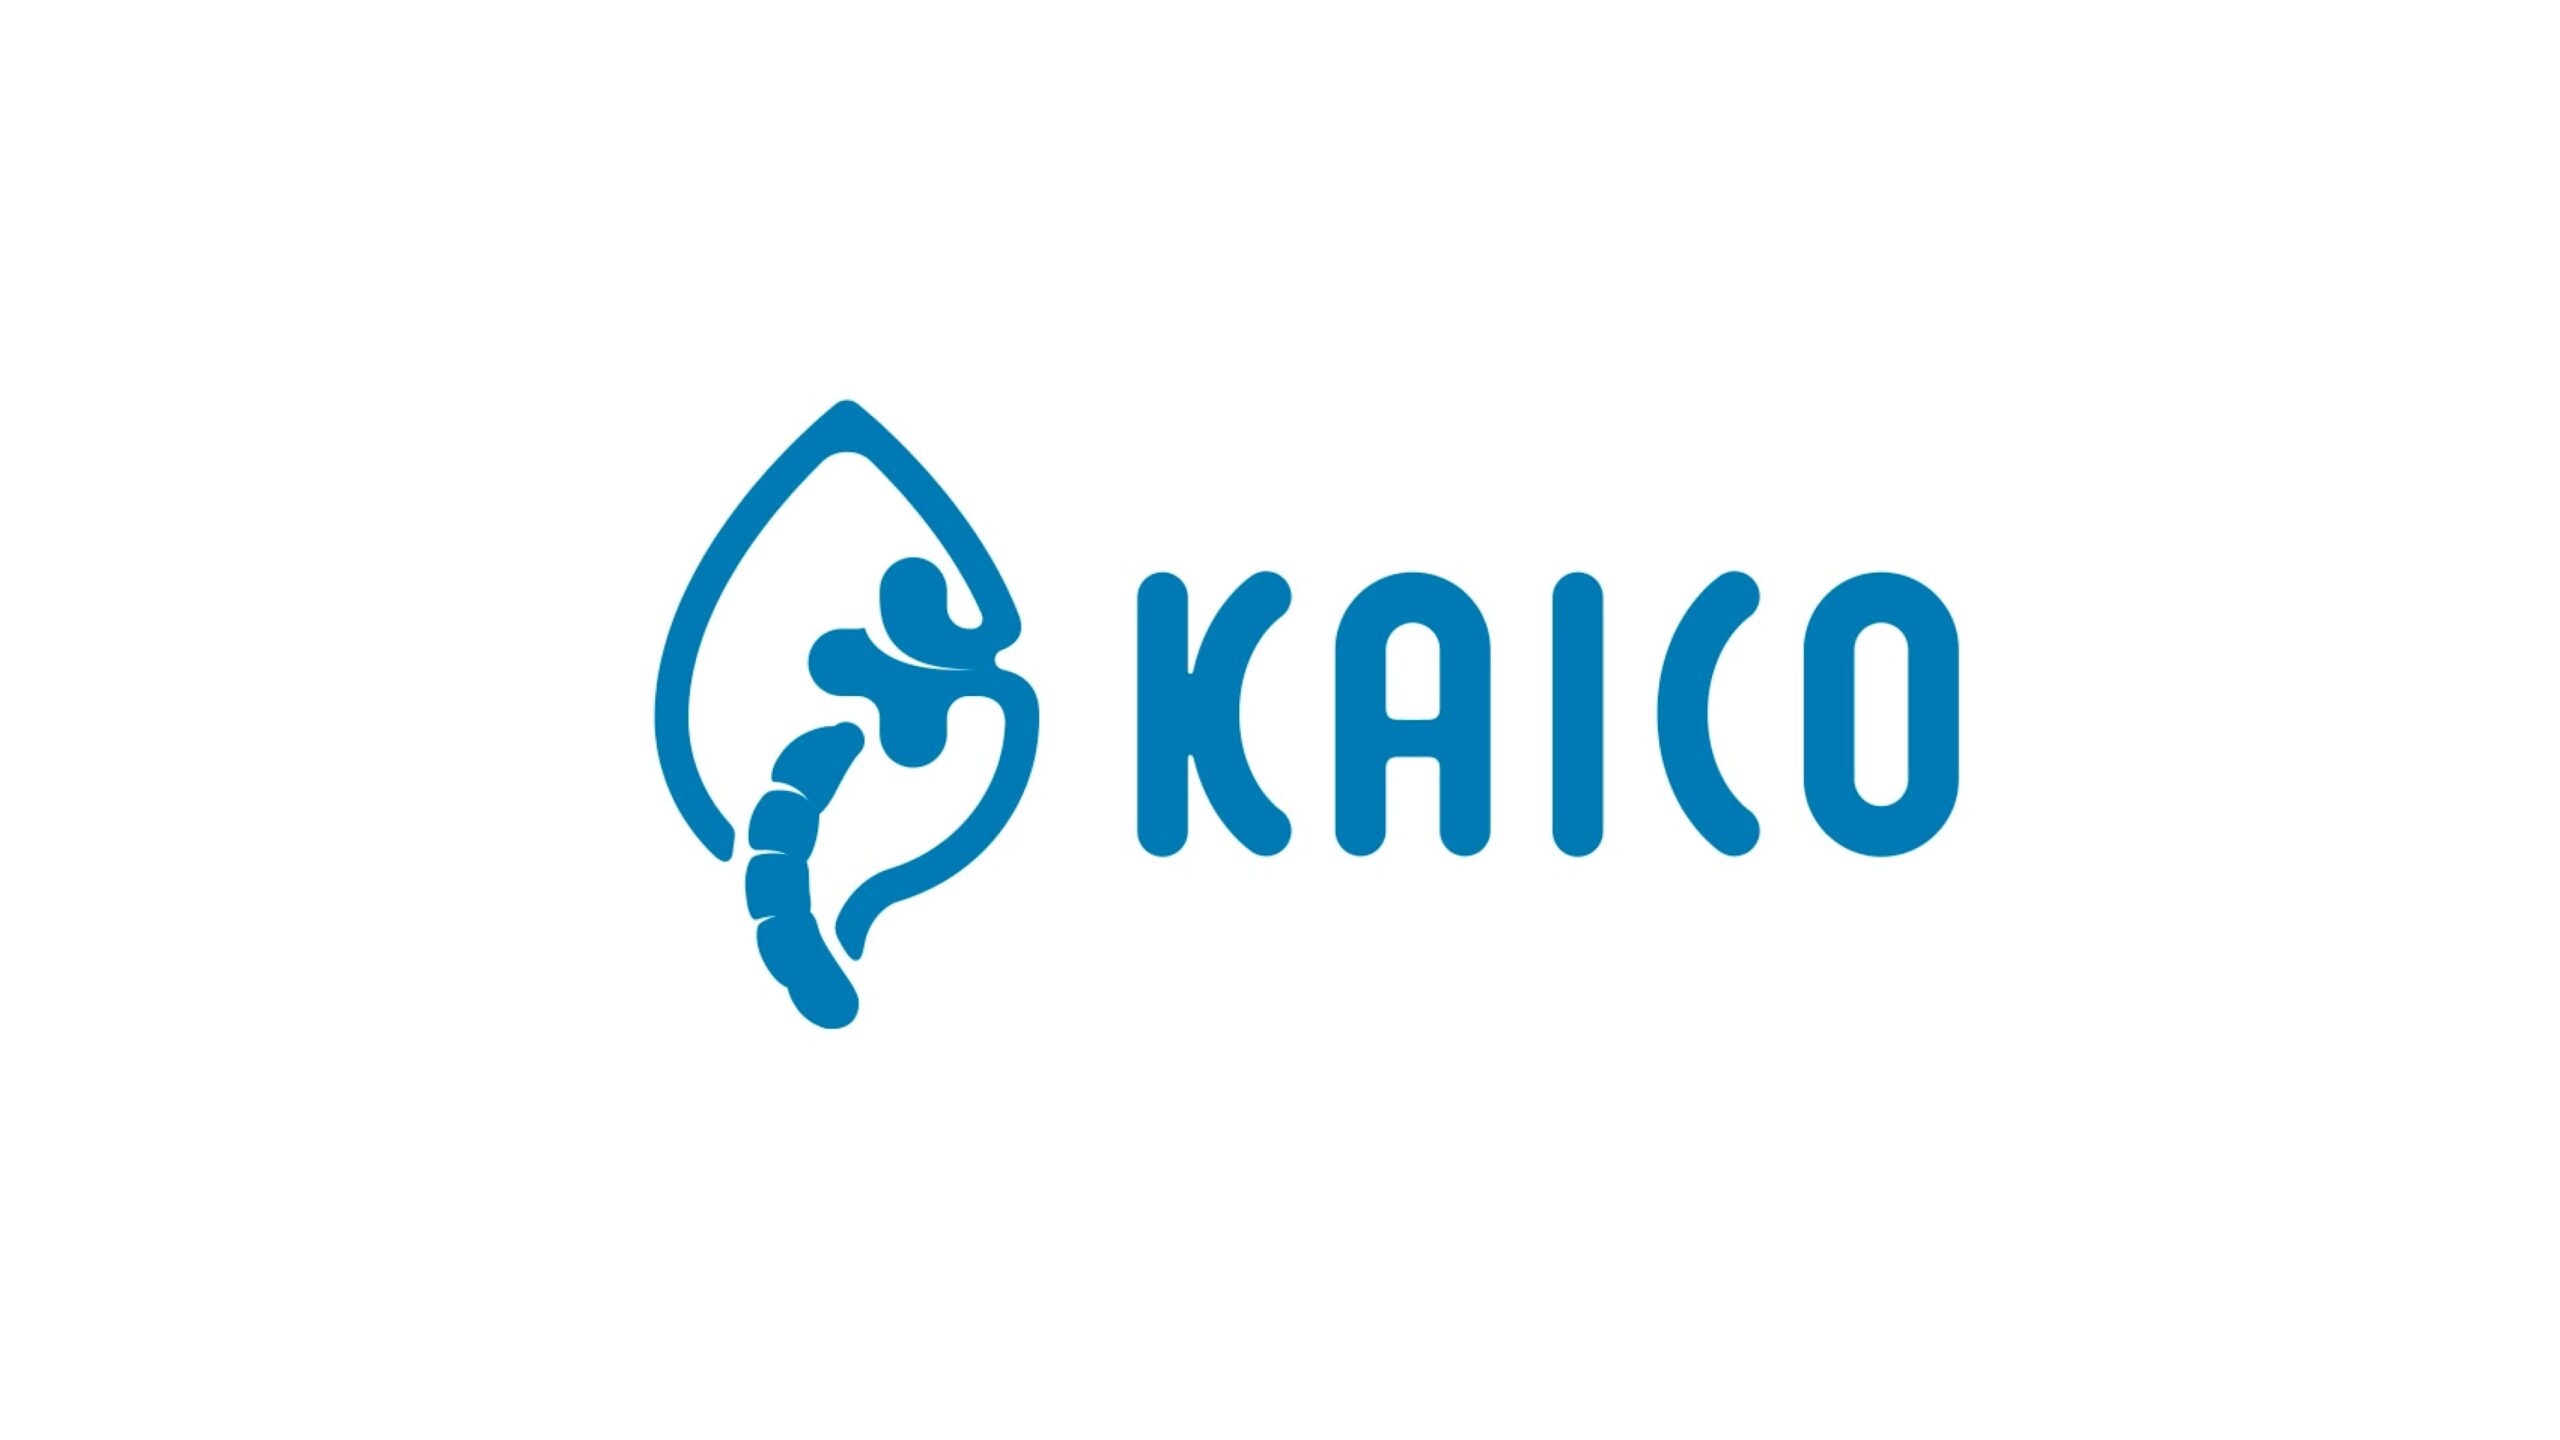 KAICO株式会社、シリーズA追加ラウンドとして新たに2.9億円の資金調達ーシリーズ累計は約8.1億円に